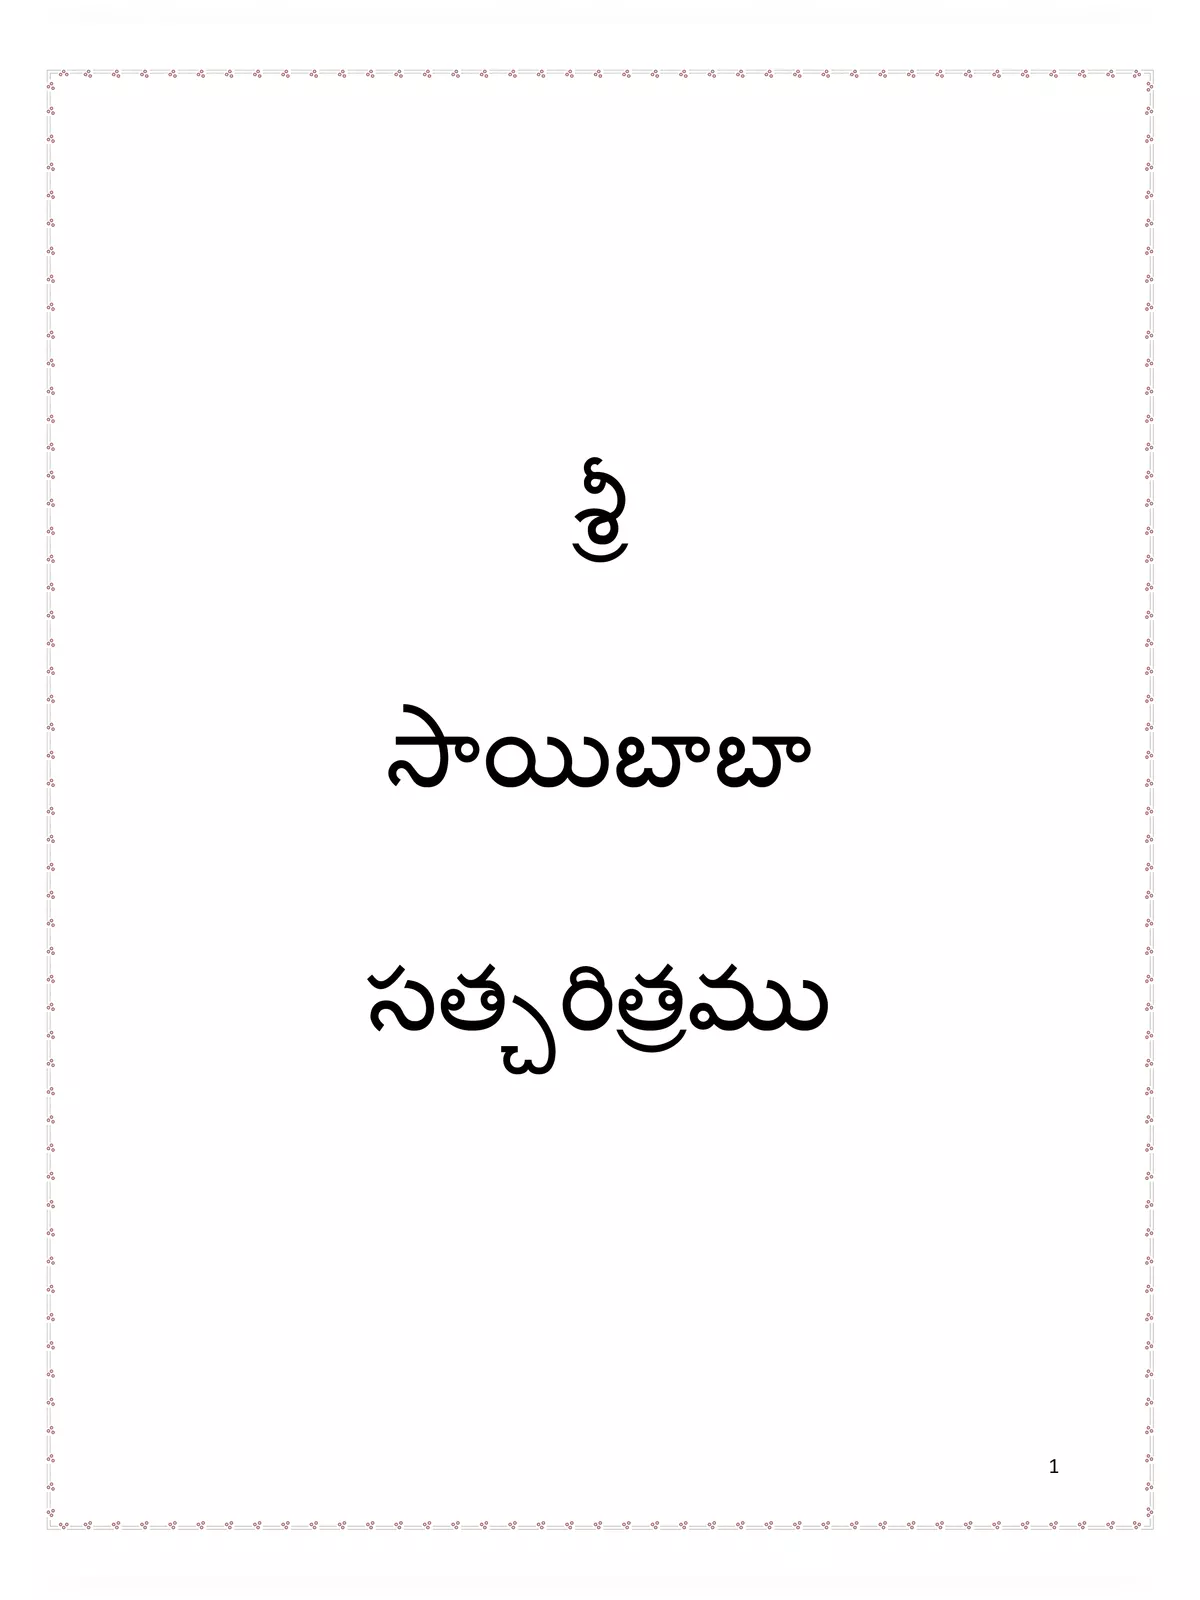 Sai Baba Parayanam Telugu